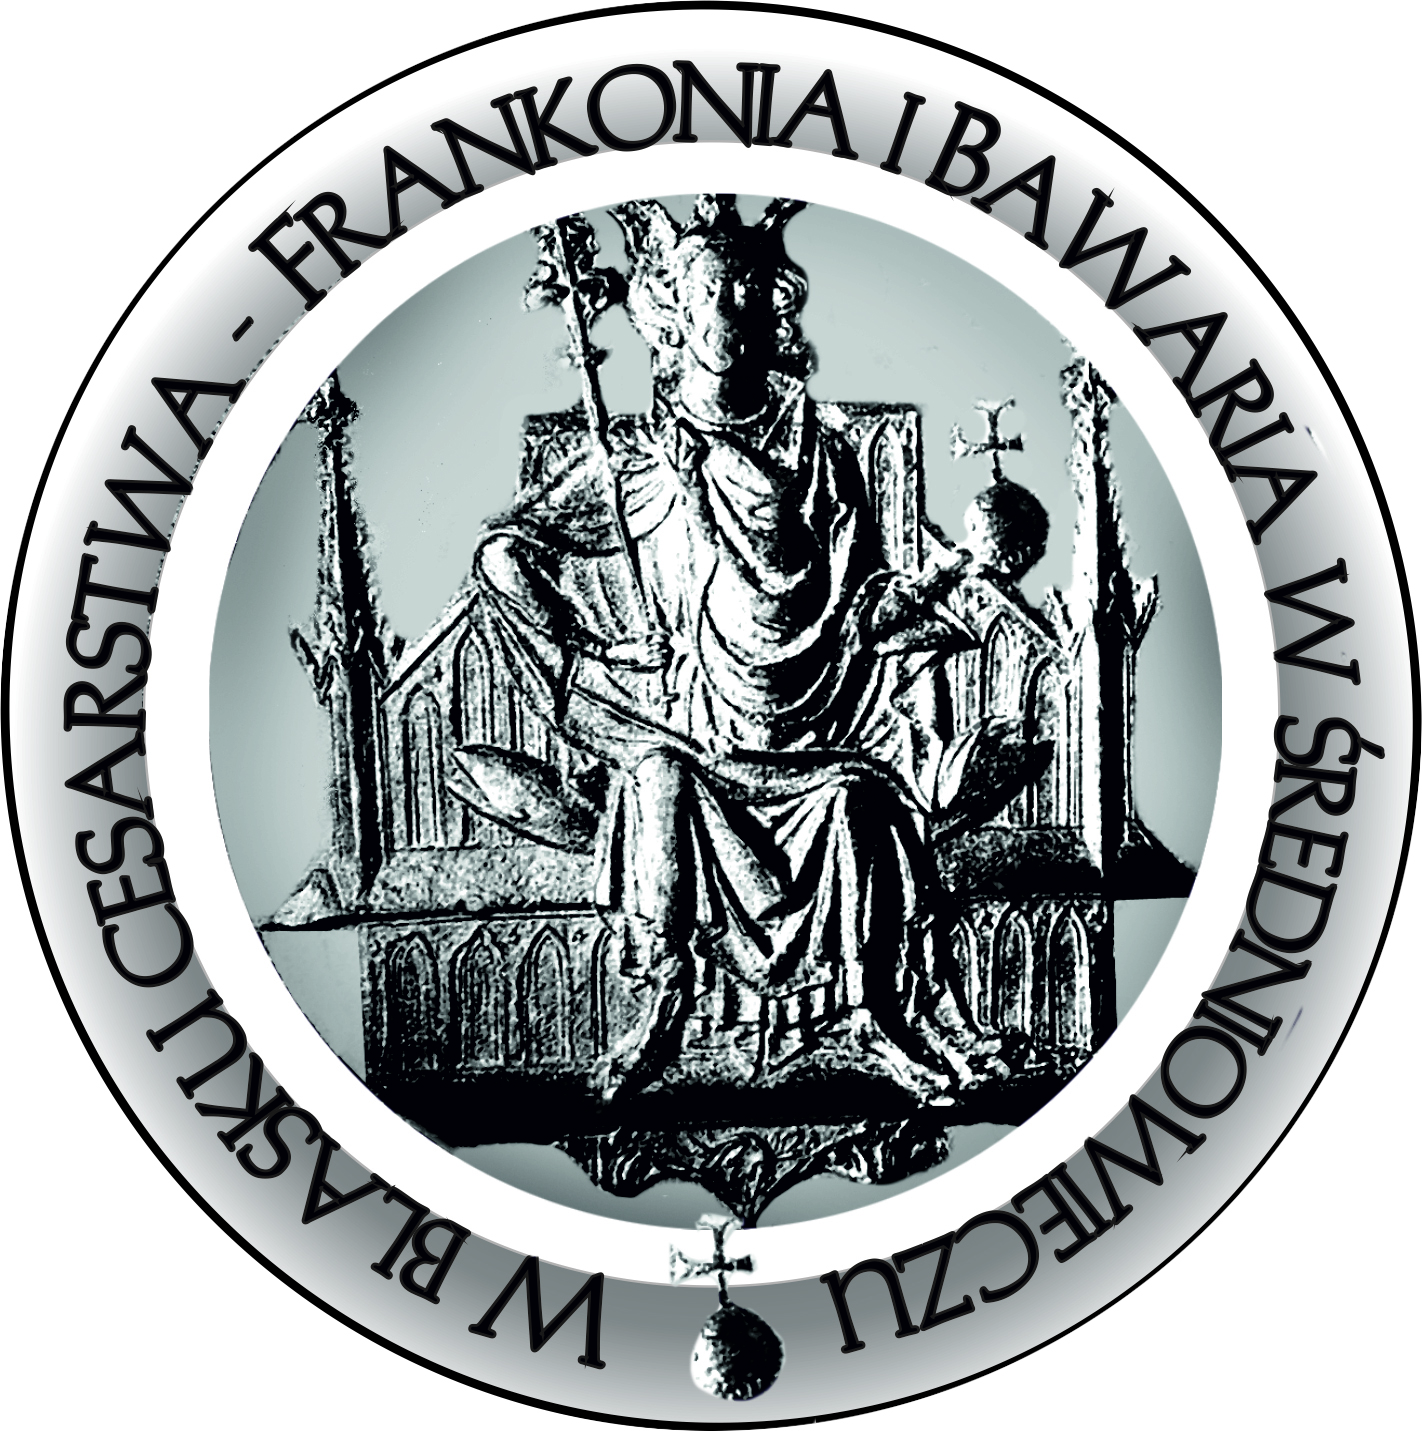 logotyp bawaria3.jpg - 3.89 Mb